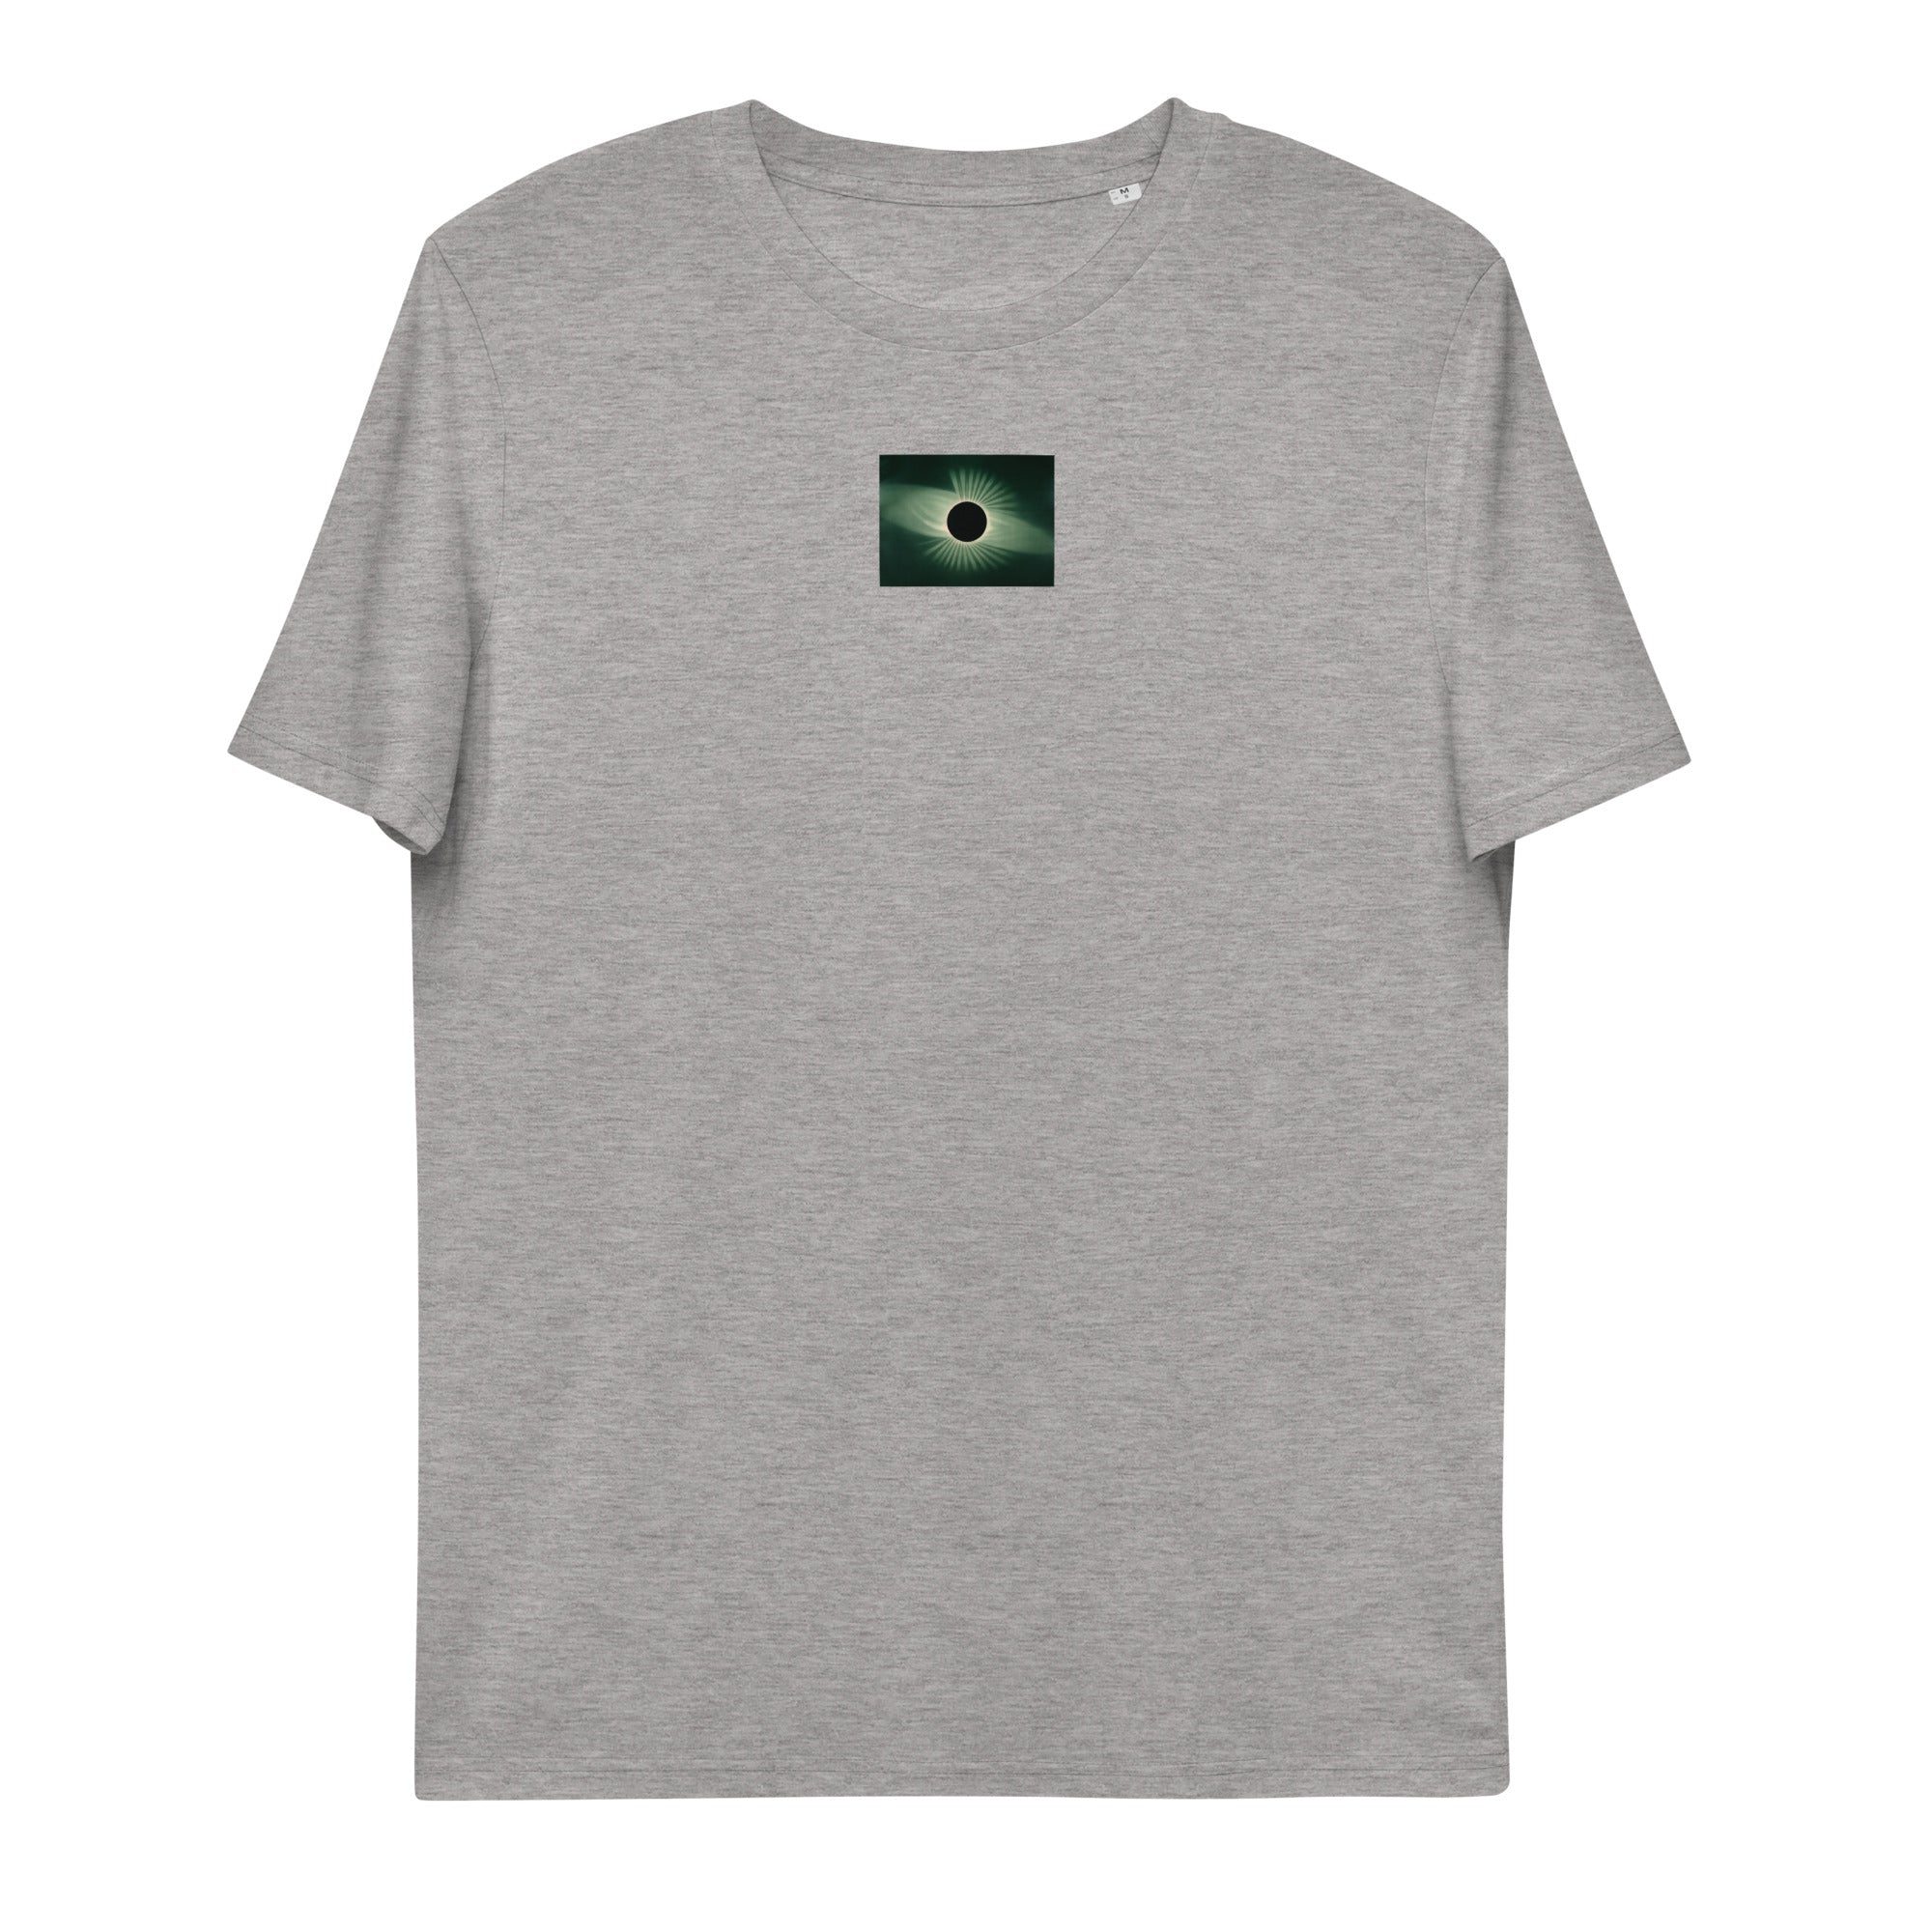 E. L. Trouvelot Total Eclipse of the Sun - Unisex organic cotton t-shirt